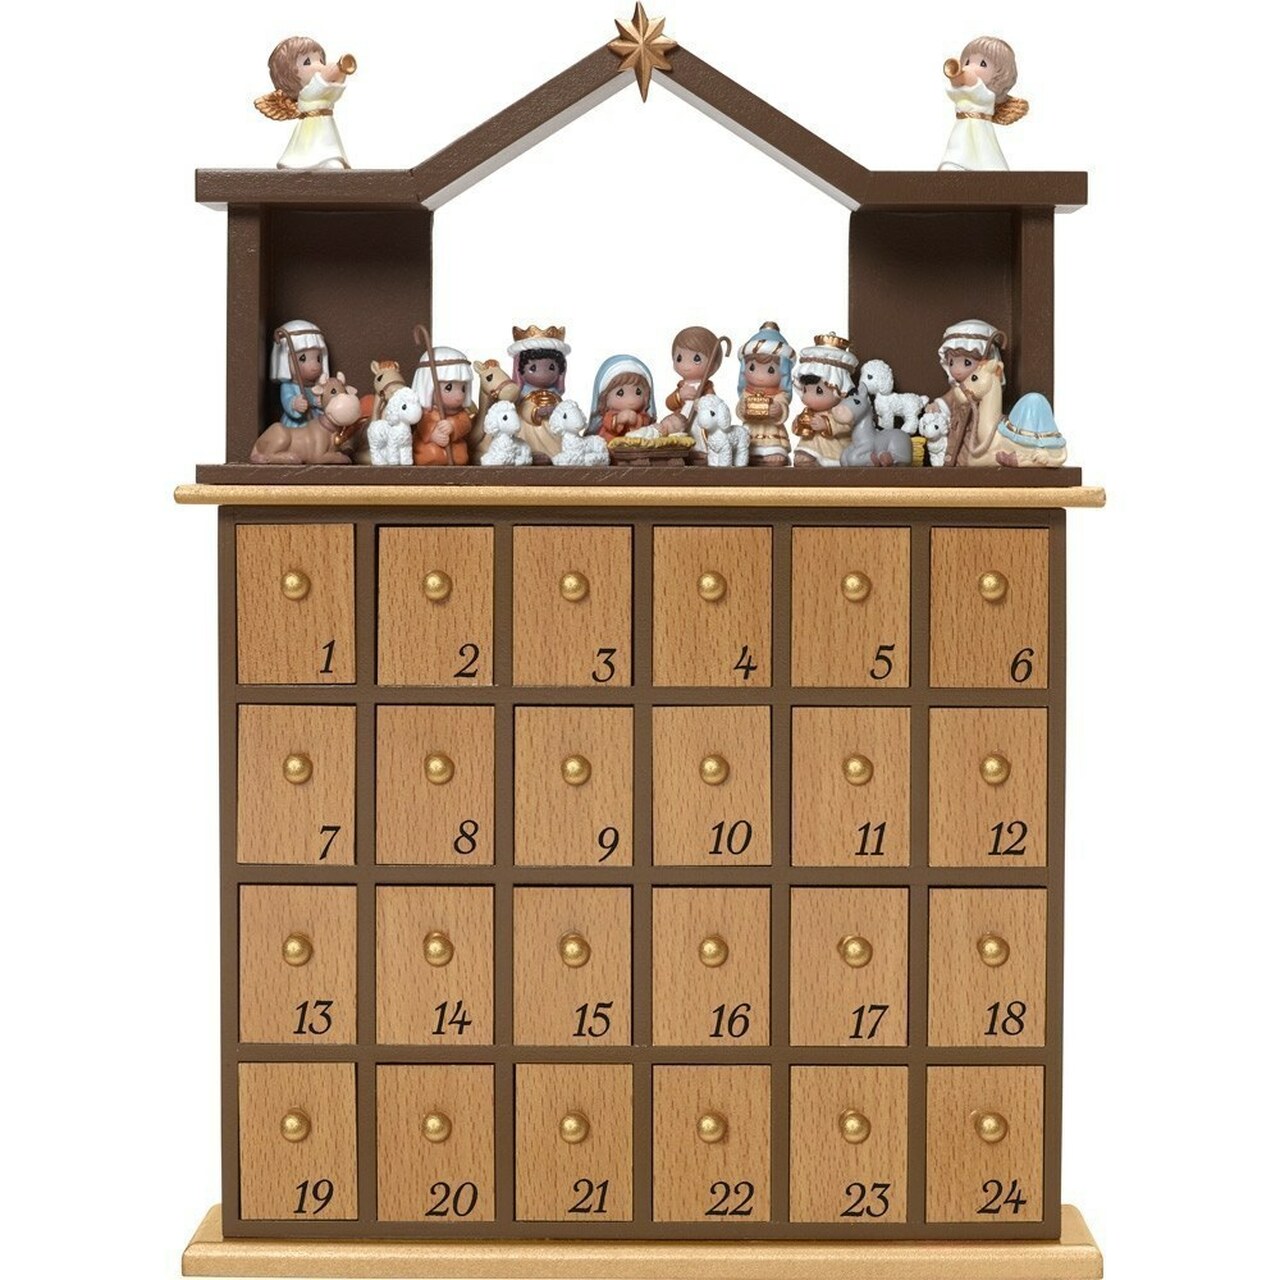 Calendario de Adviento de la Natividad